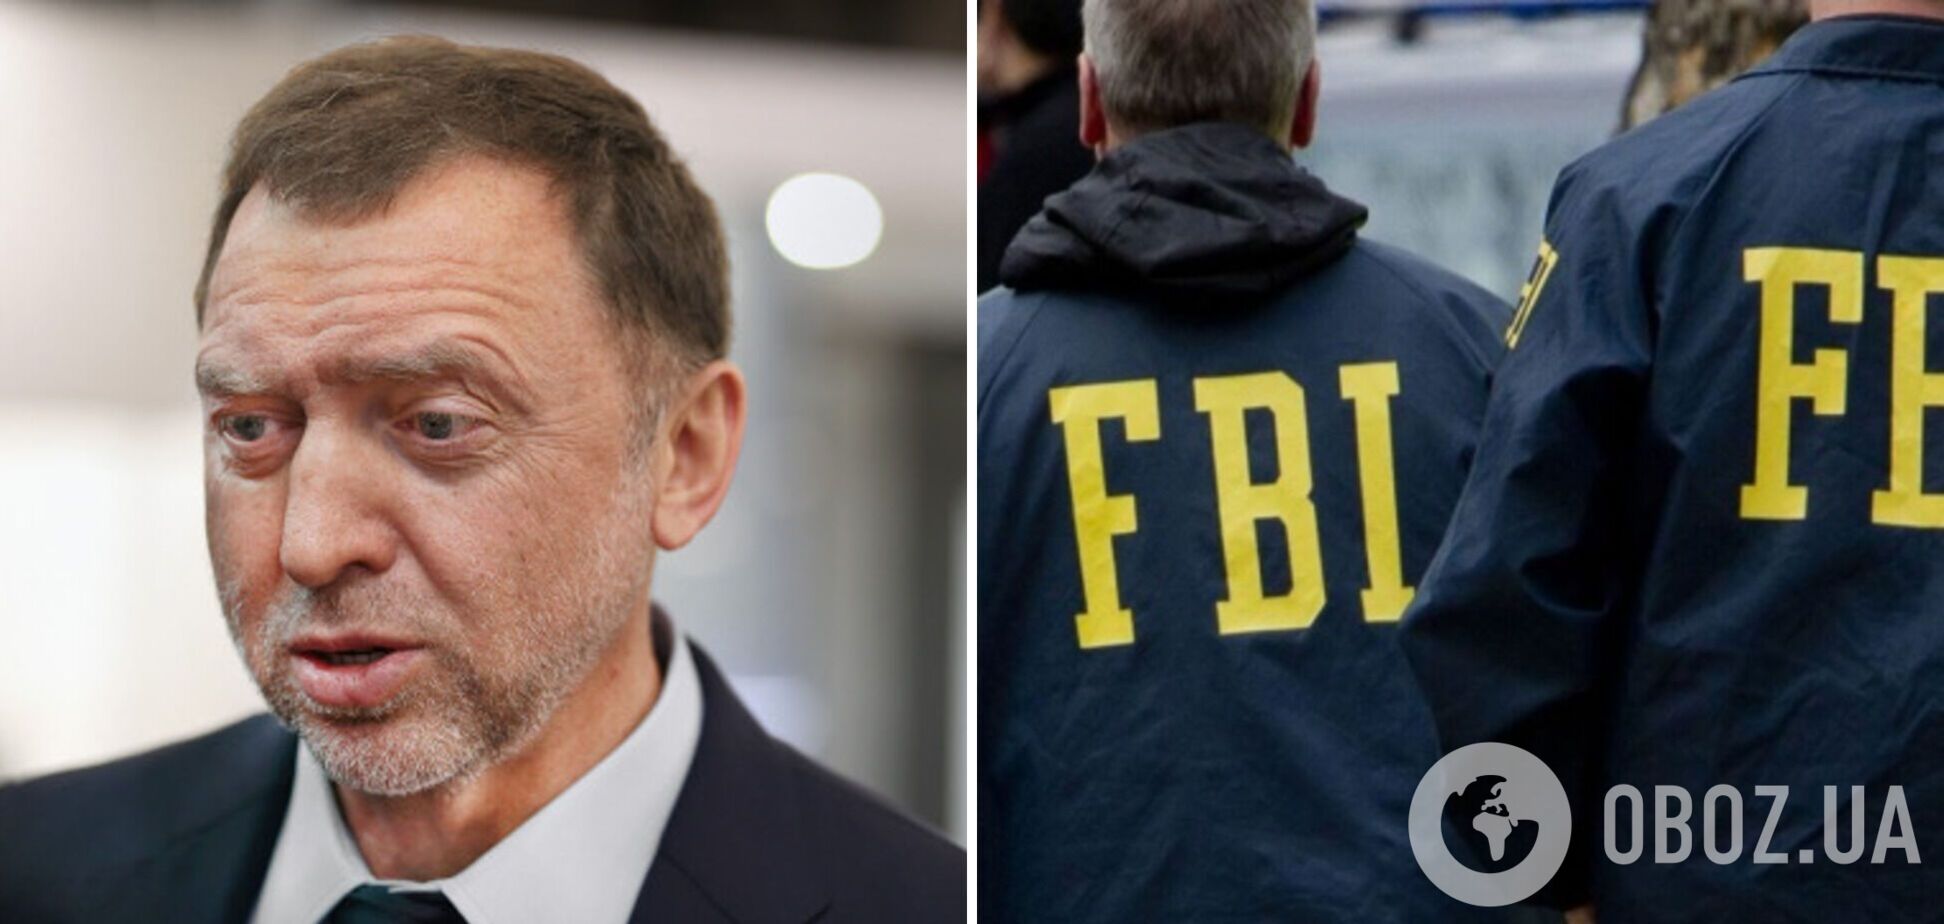 В США задержали бывшего агента ФБР, сотрудничавшего с российским олигархом Дерипаской: громкие детали скандала